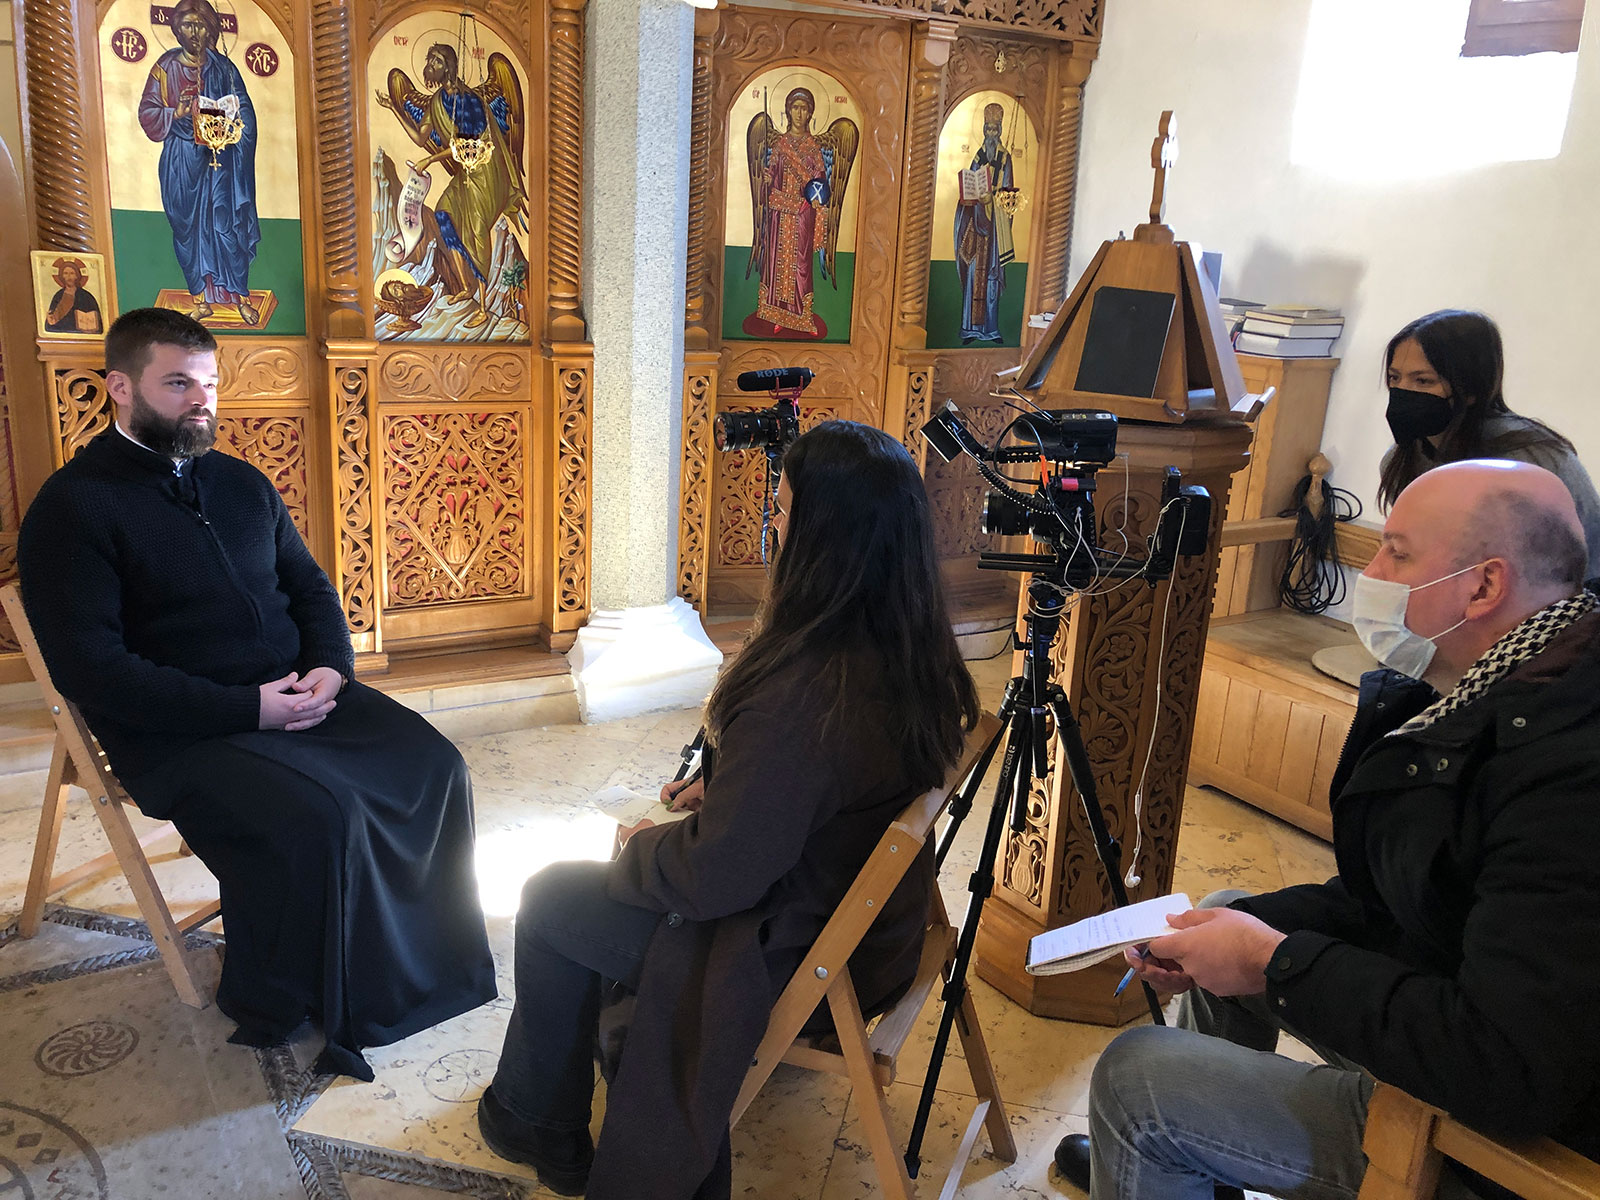 Maggie Geiler and Clara Charrin, with Asim Beslija, interview Serb priest in Mostar